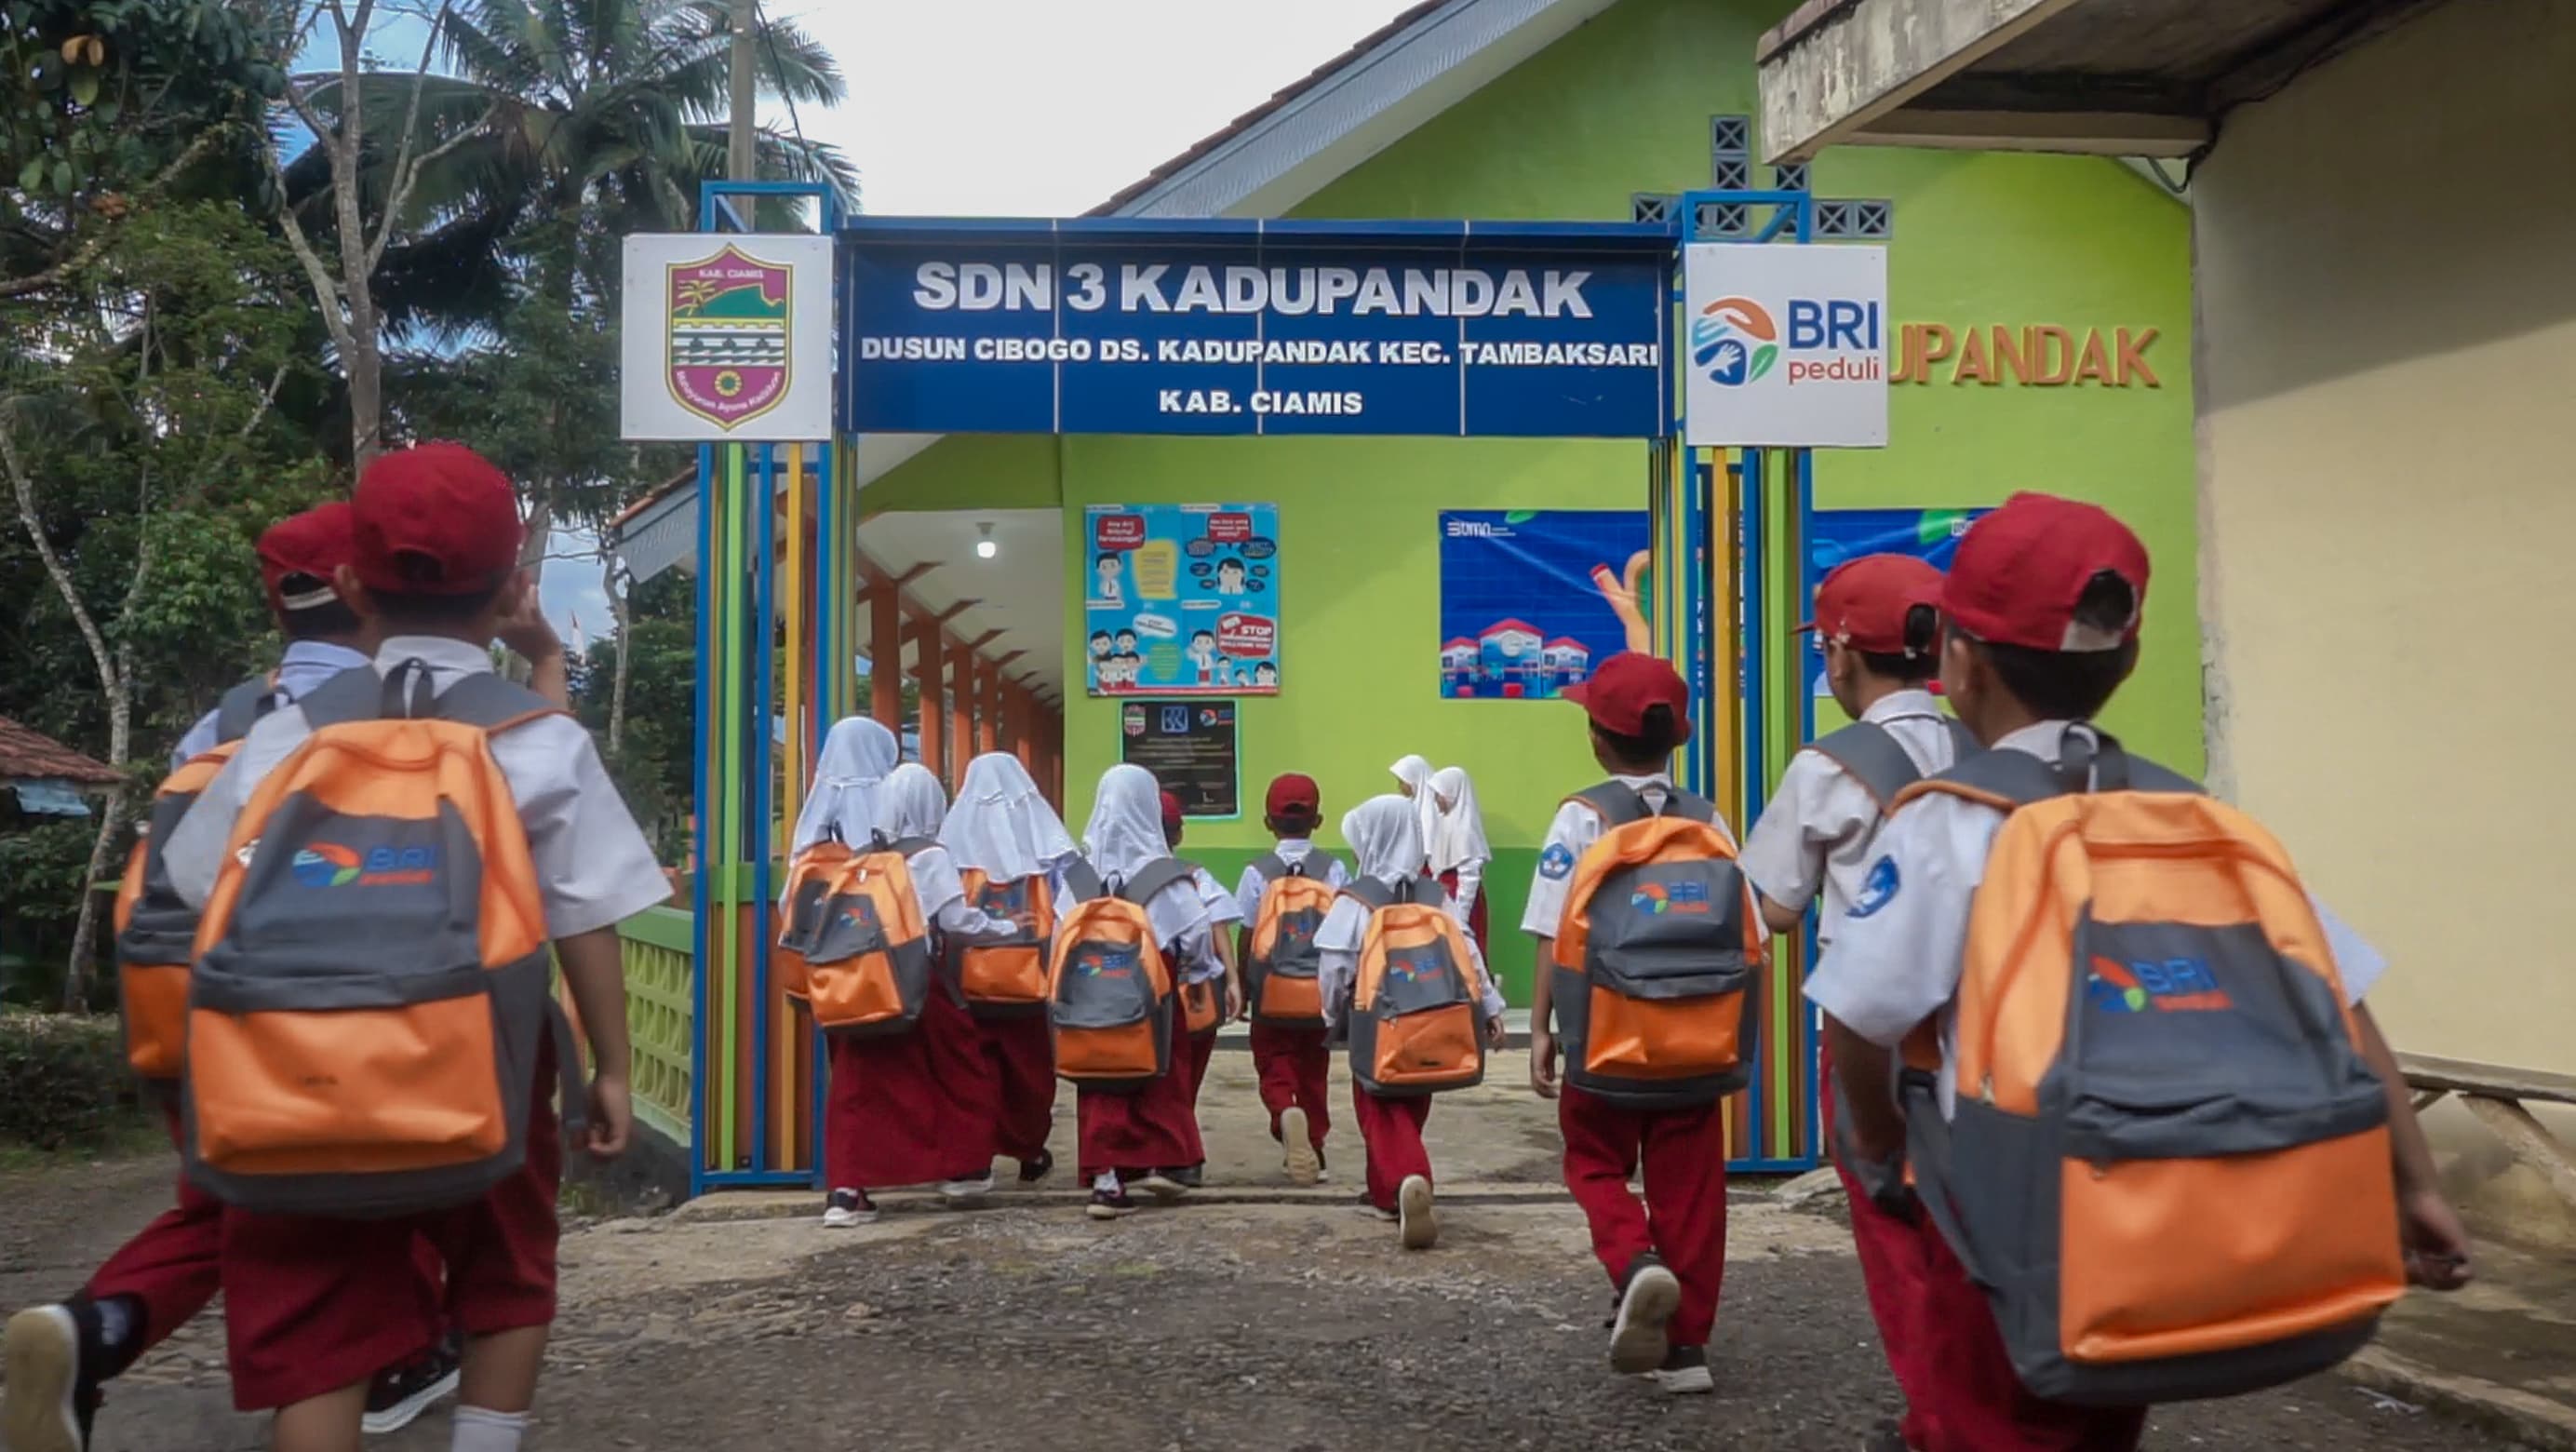 BRI Peduli Ini Sekolahku, Dari BRI Untuk Kemajuan Pendidikan Indonesia